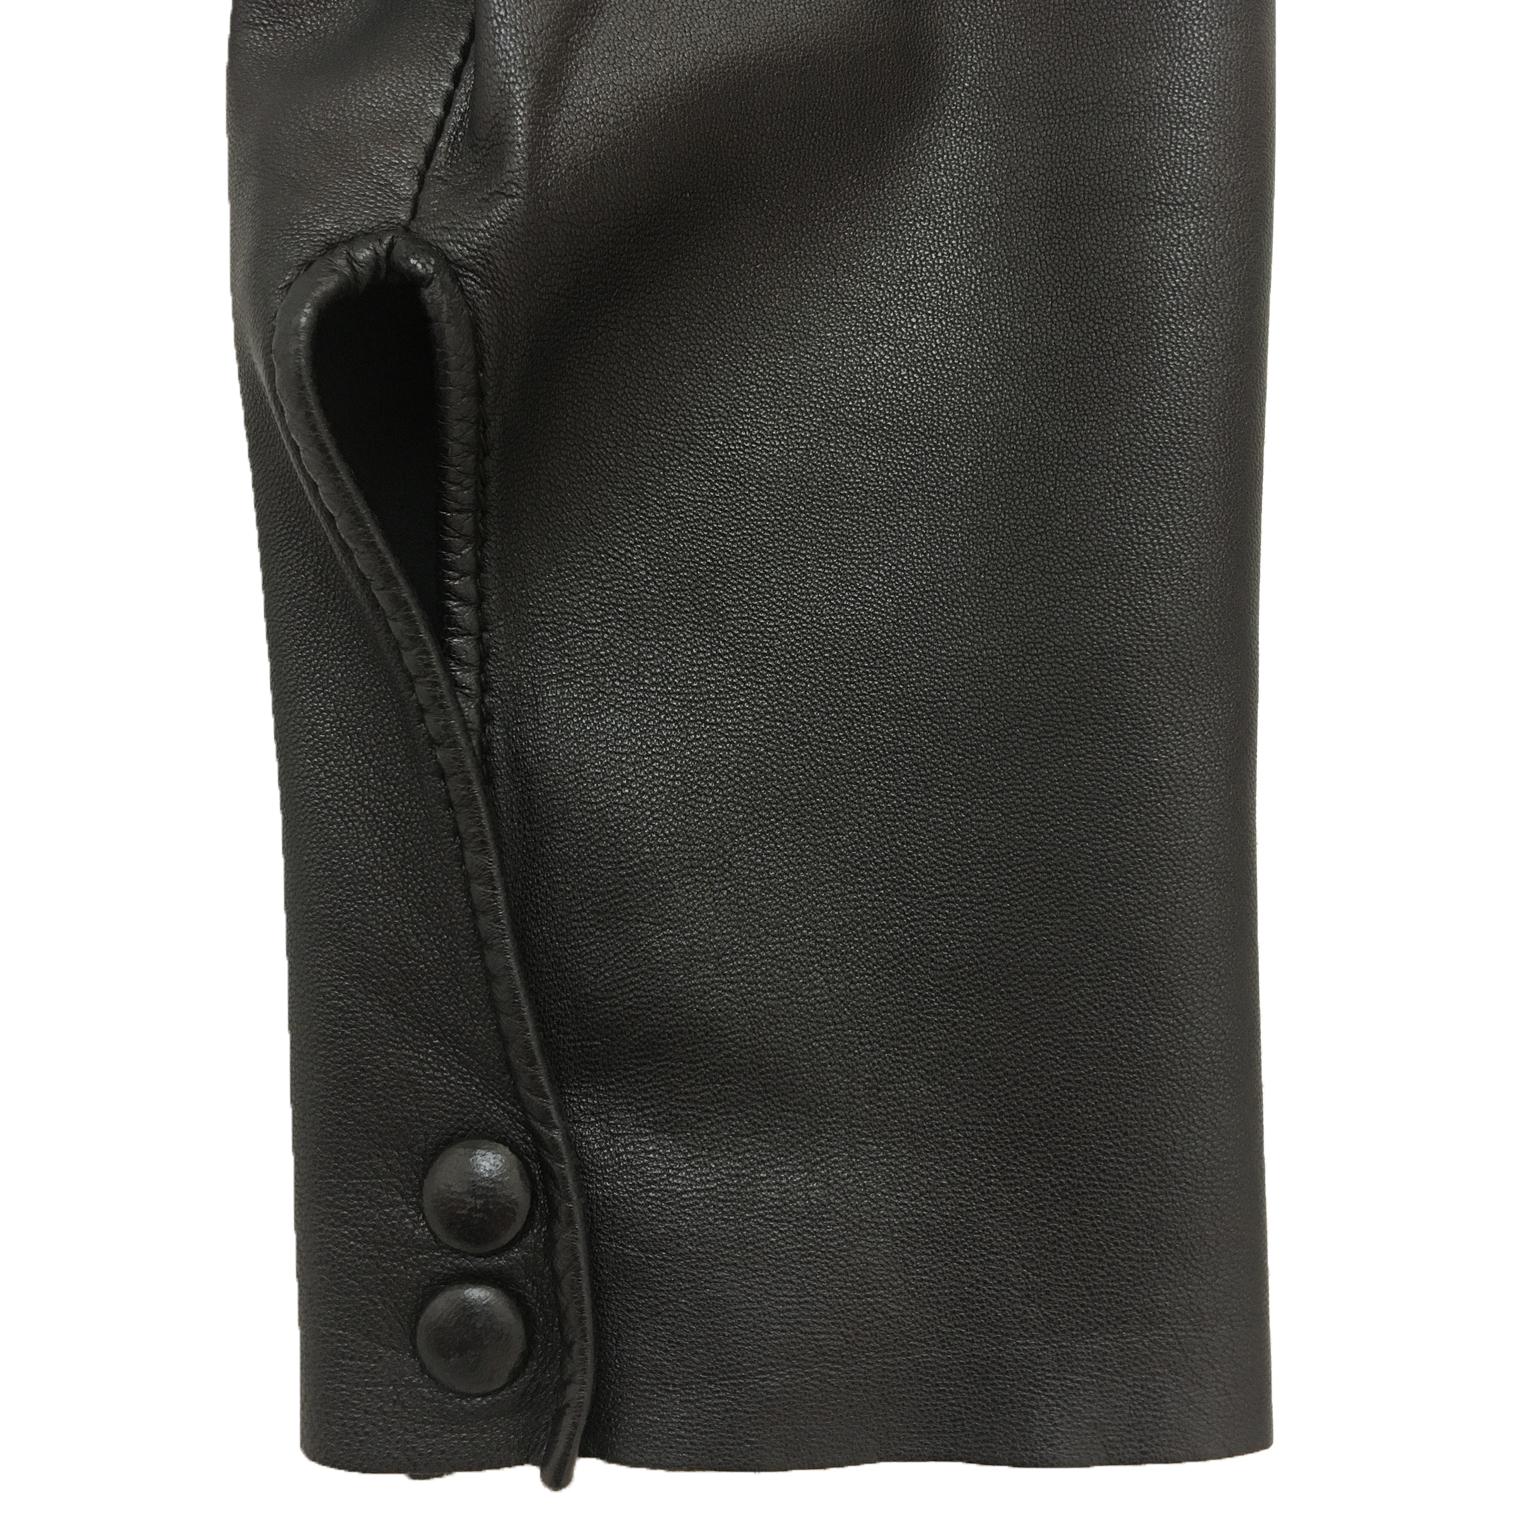 Jean Paul Gaultier FEMME Blazer Jacket Leather Sleeves 90s In Good Condition For Sale In Berlin, DE